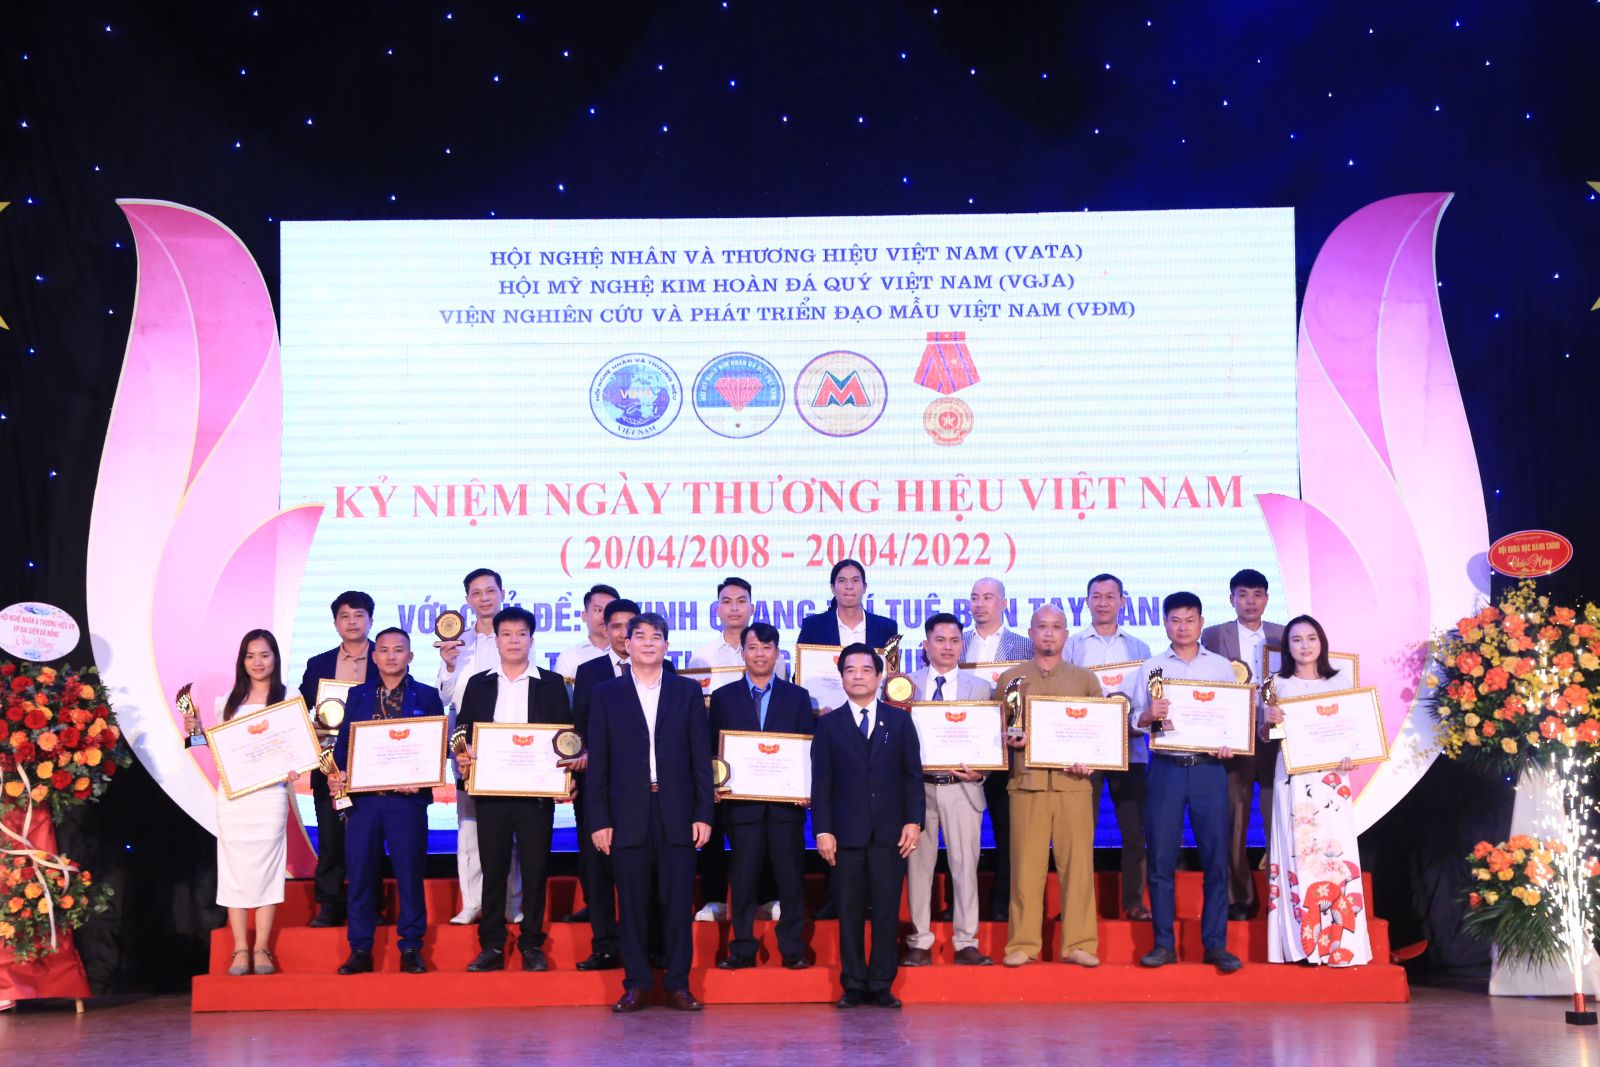 Kỷ niệm ngày Thương hiệu Việt Nam 20 tháng 04 năm 2022